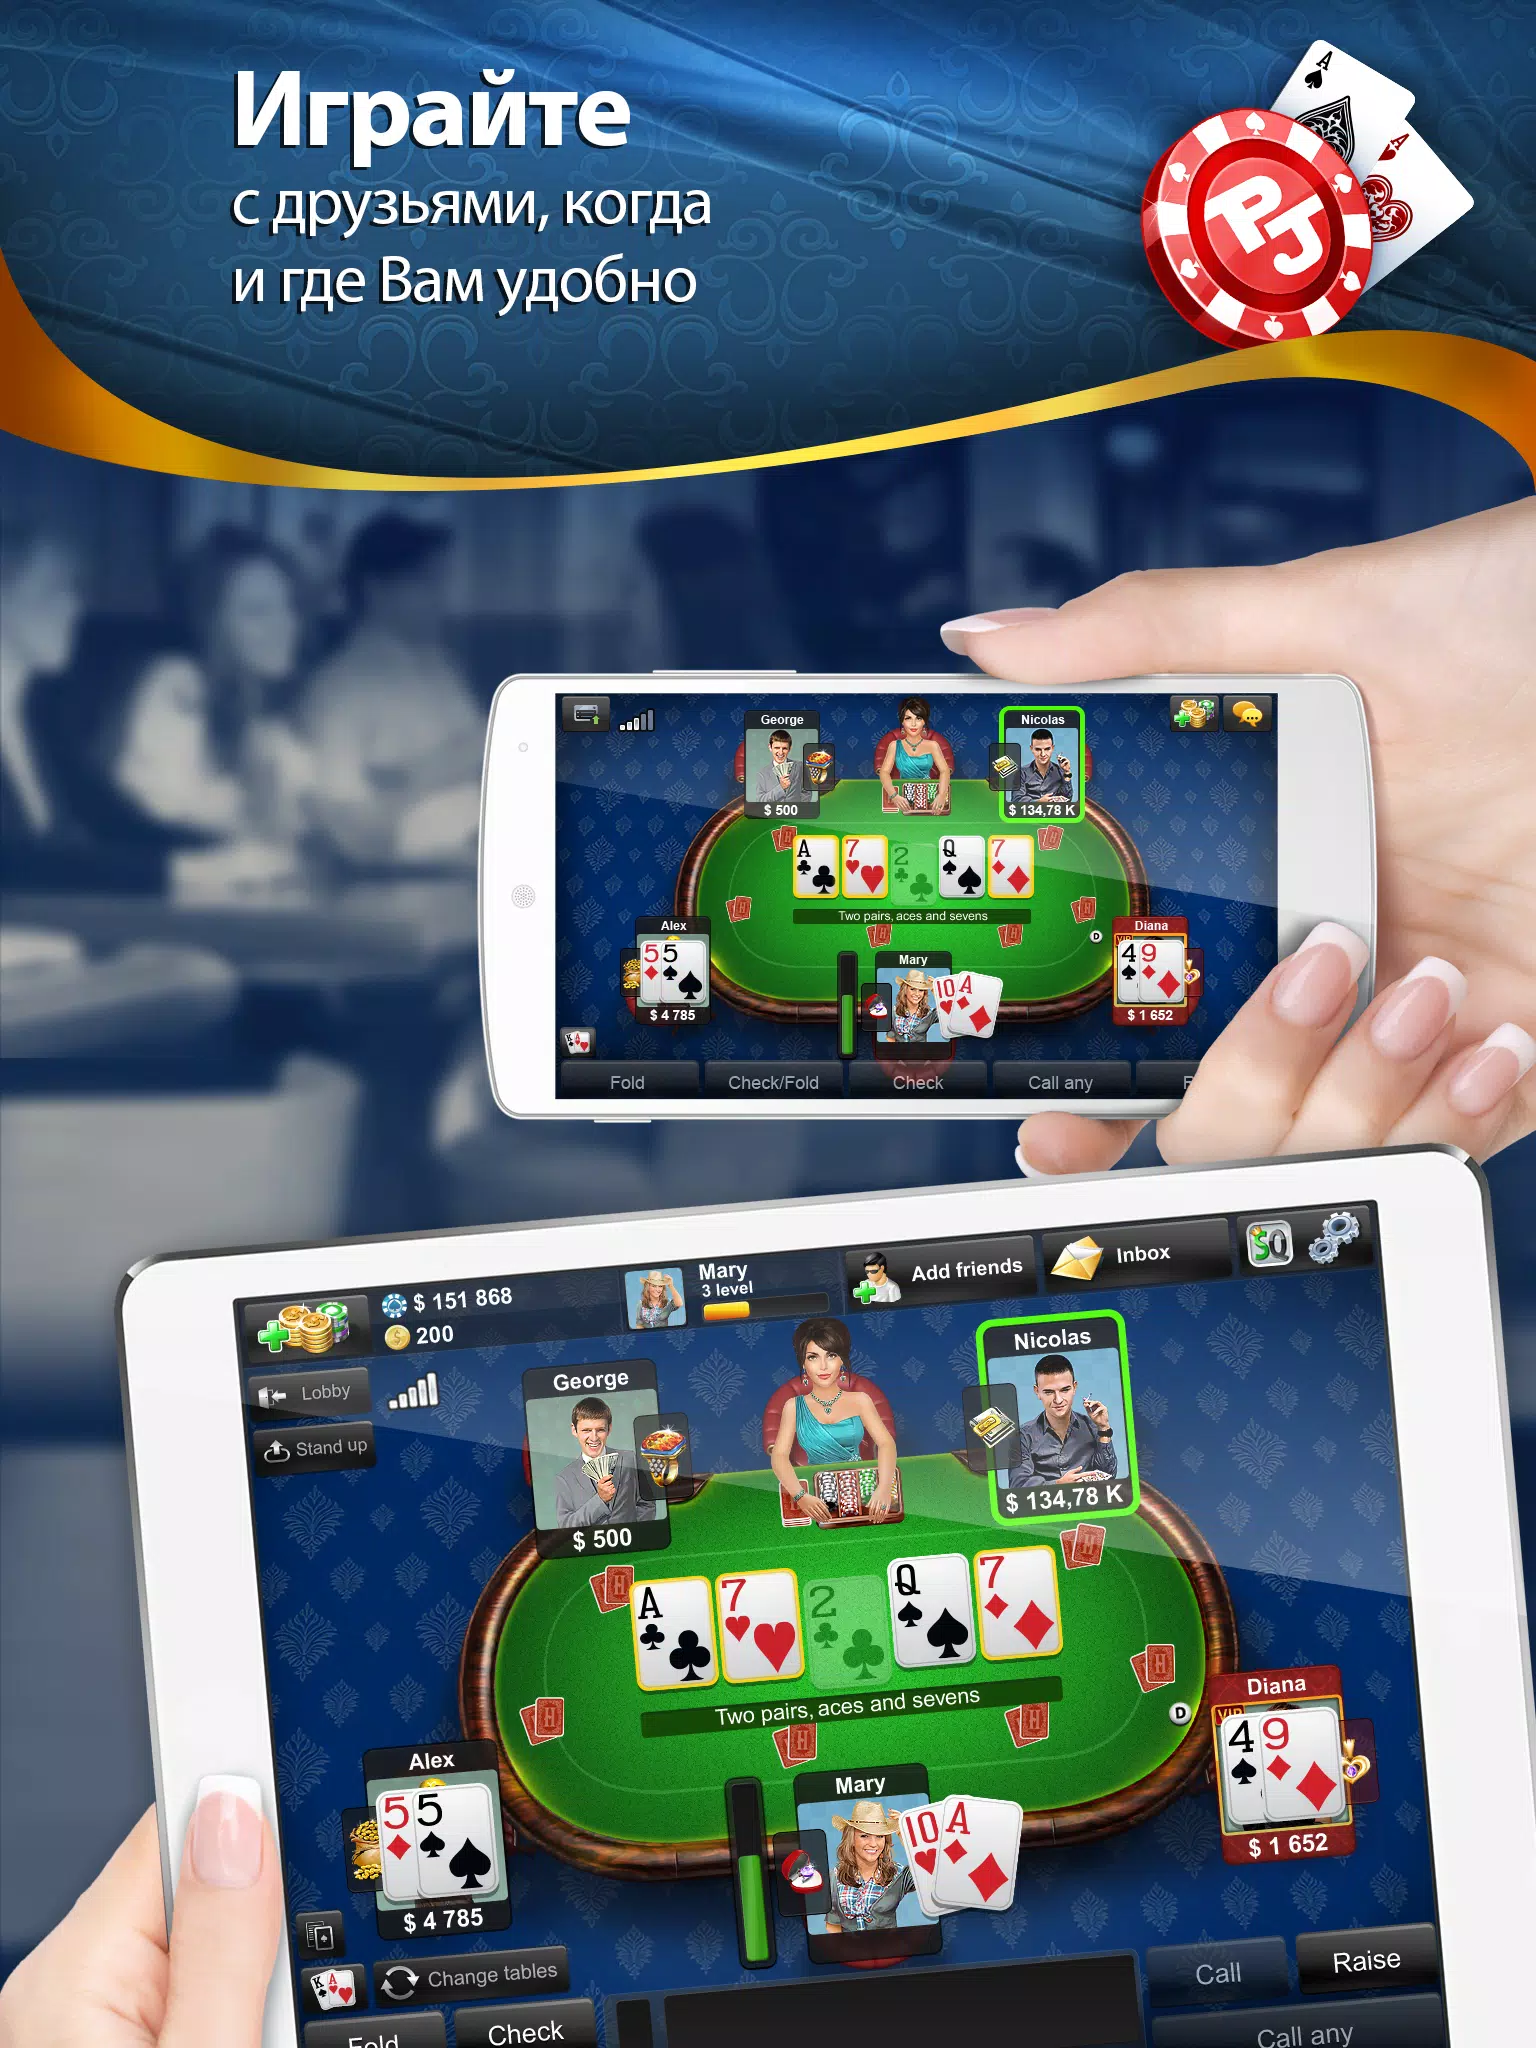 Играть онлайн в покер jet бесплатные деньги казино